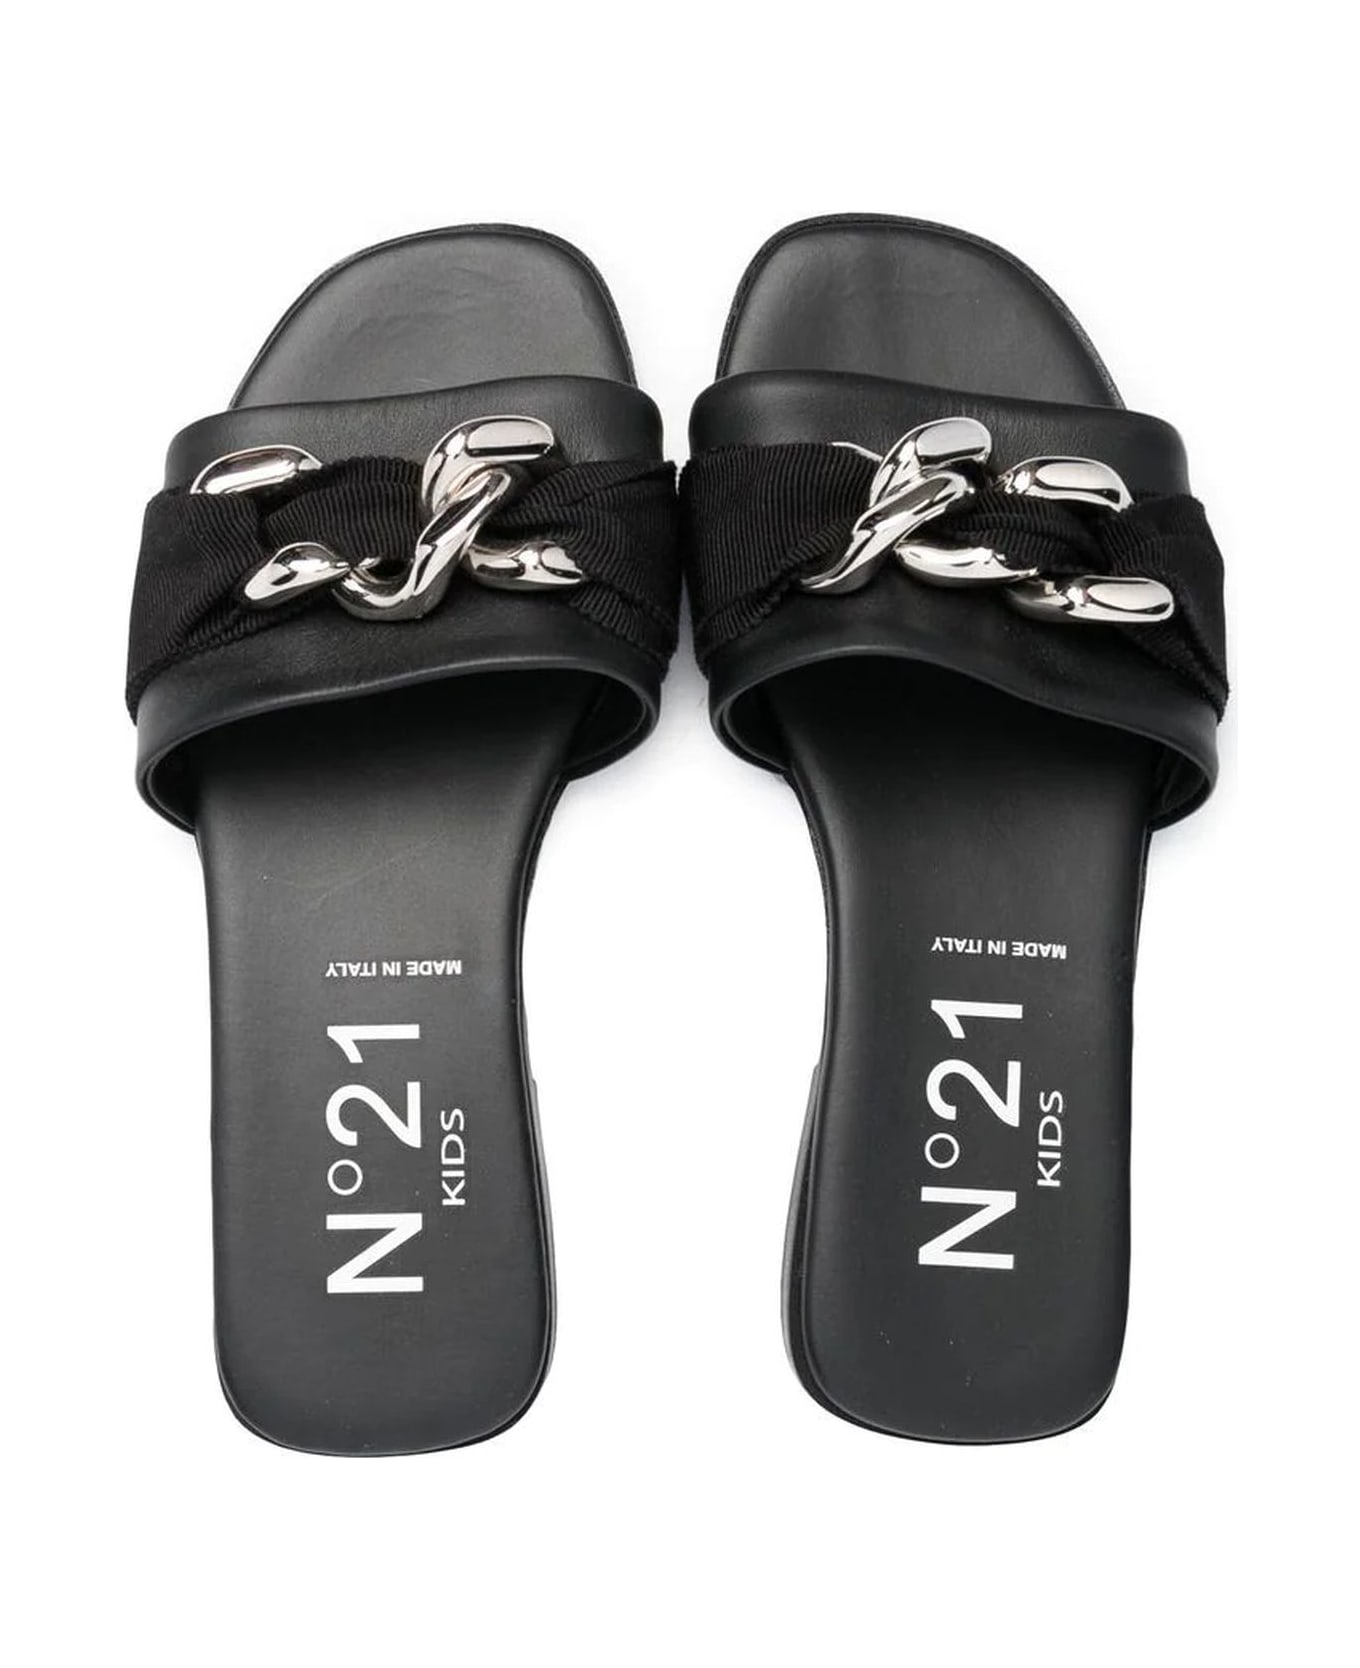 N.21 N°21 Sandals Black - Black シューズ